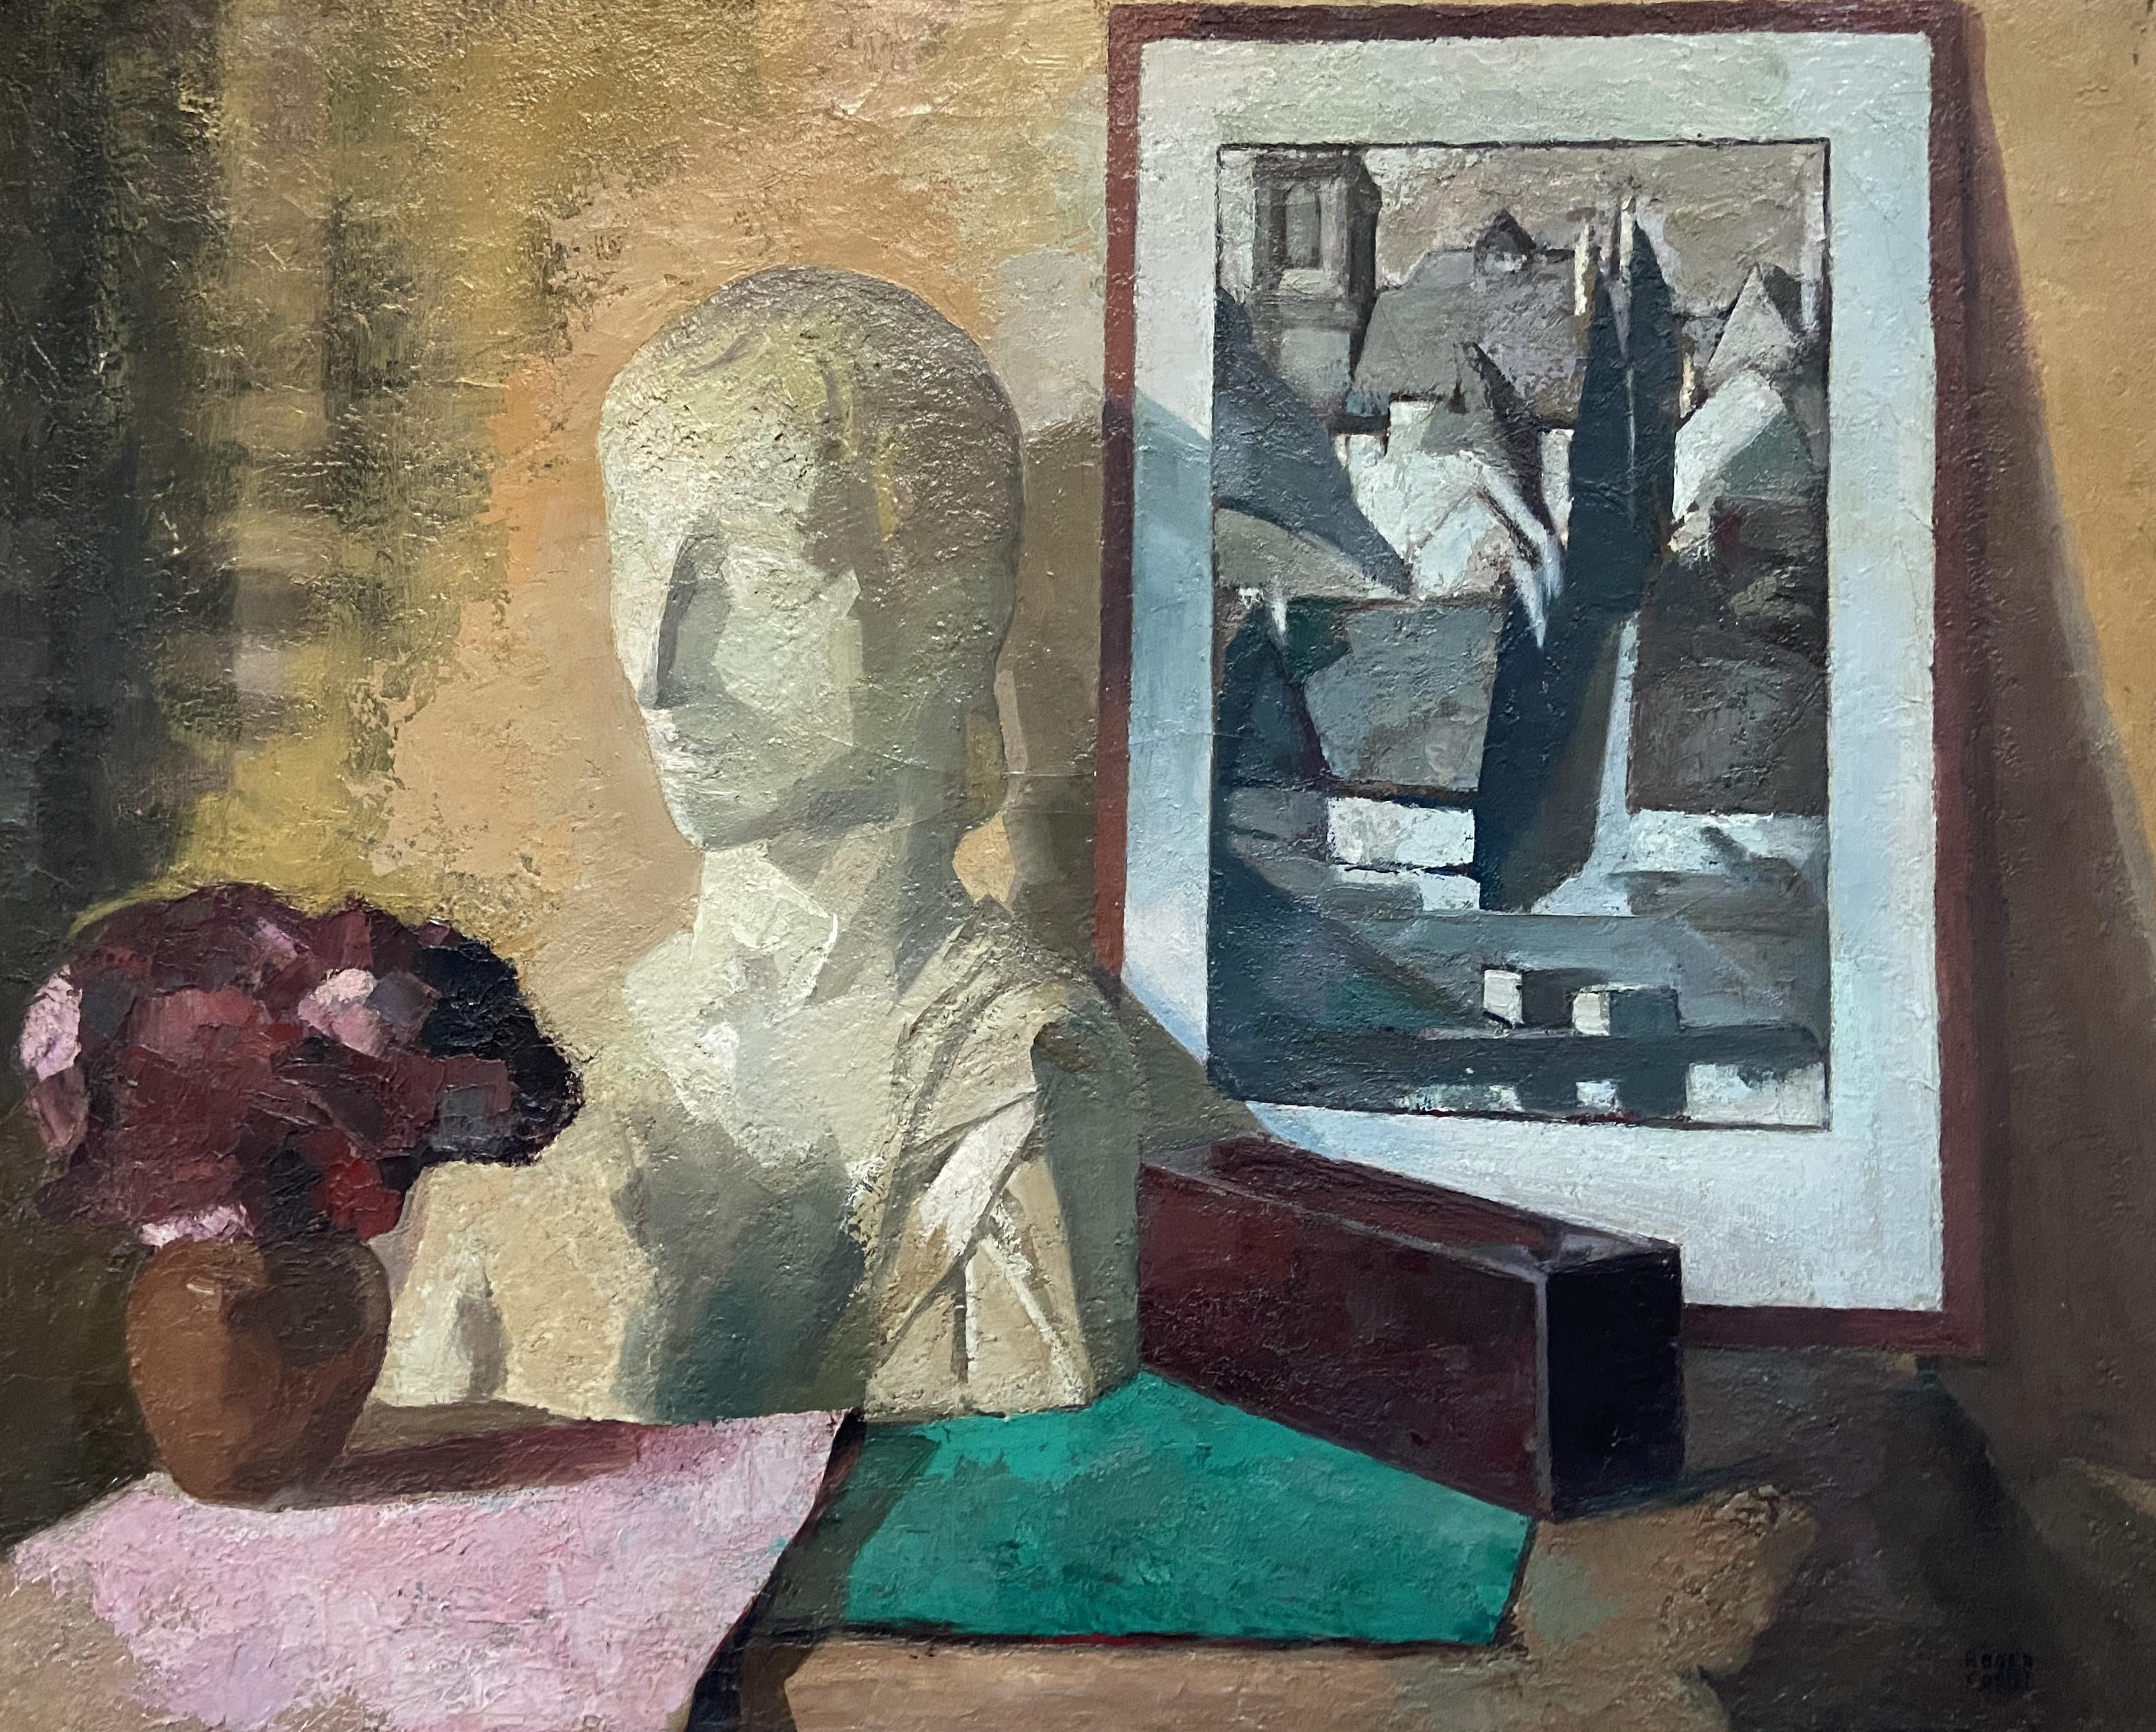 Roger Cortet (1910-1978)
Stilleben mit einer weißen Skulptur
Öl auf Leinwand
Signiert unten rechts
64 x 80 cm
Gerahmt : 70 x 85,5 cm
In der Rahmennut an der Befestigung befindet sich ein kleines, aber unauffälliges Loch.
 
Dieses seltene Gemälde von